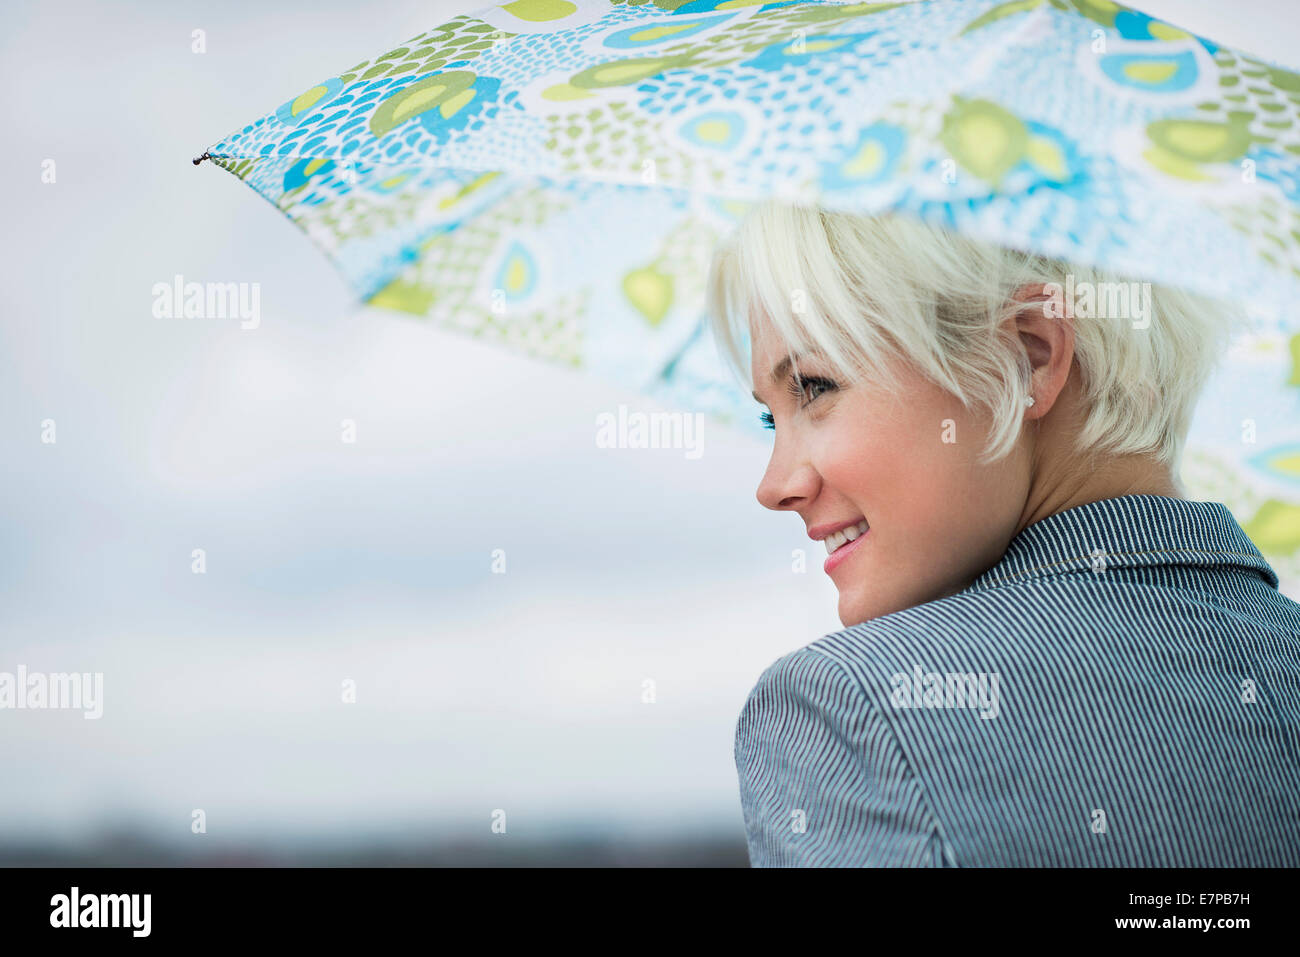 Profil de blonde woman under umbrella Banque D'Images